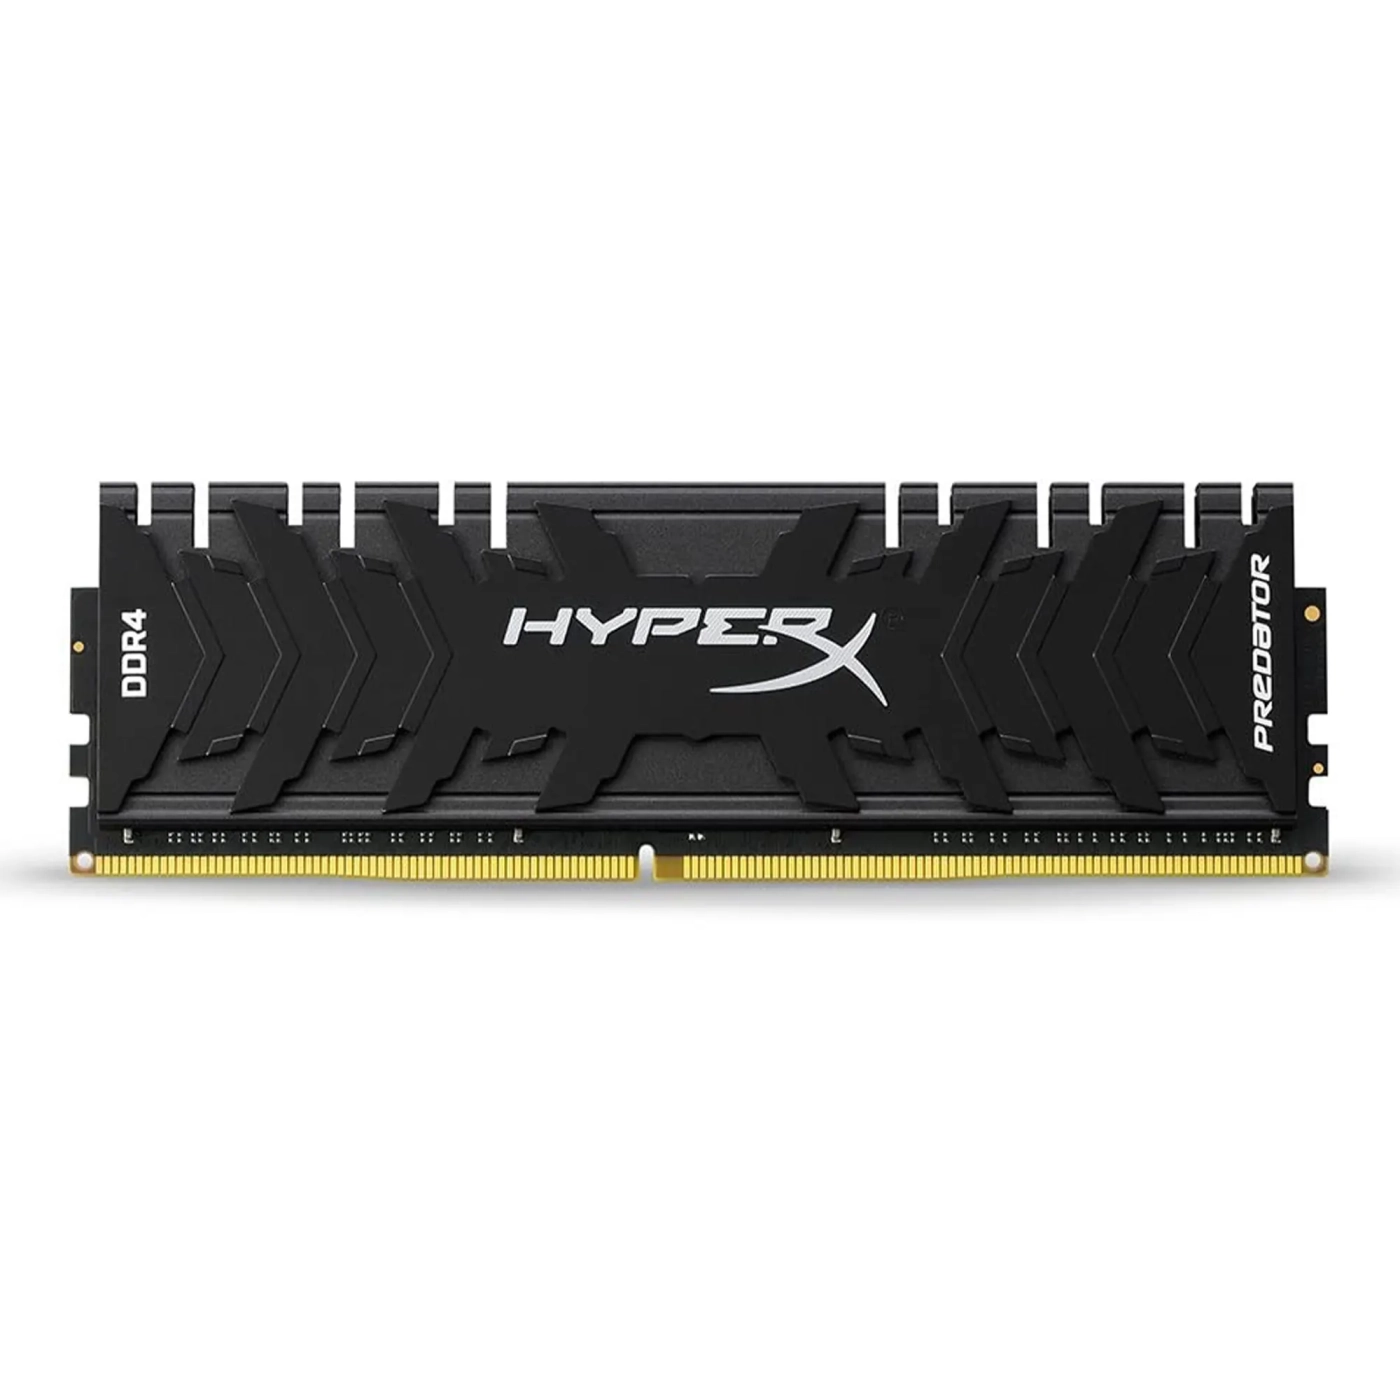 Купить Модуль памяти Kingston HyperX Predator DDR4-3000 16GB 1 of 2 KIT (2x16GB) (HX430C15PB3K2/32) - фото 4